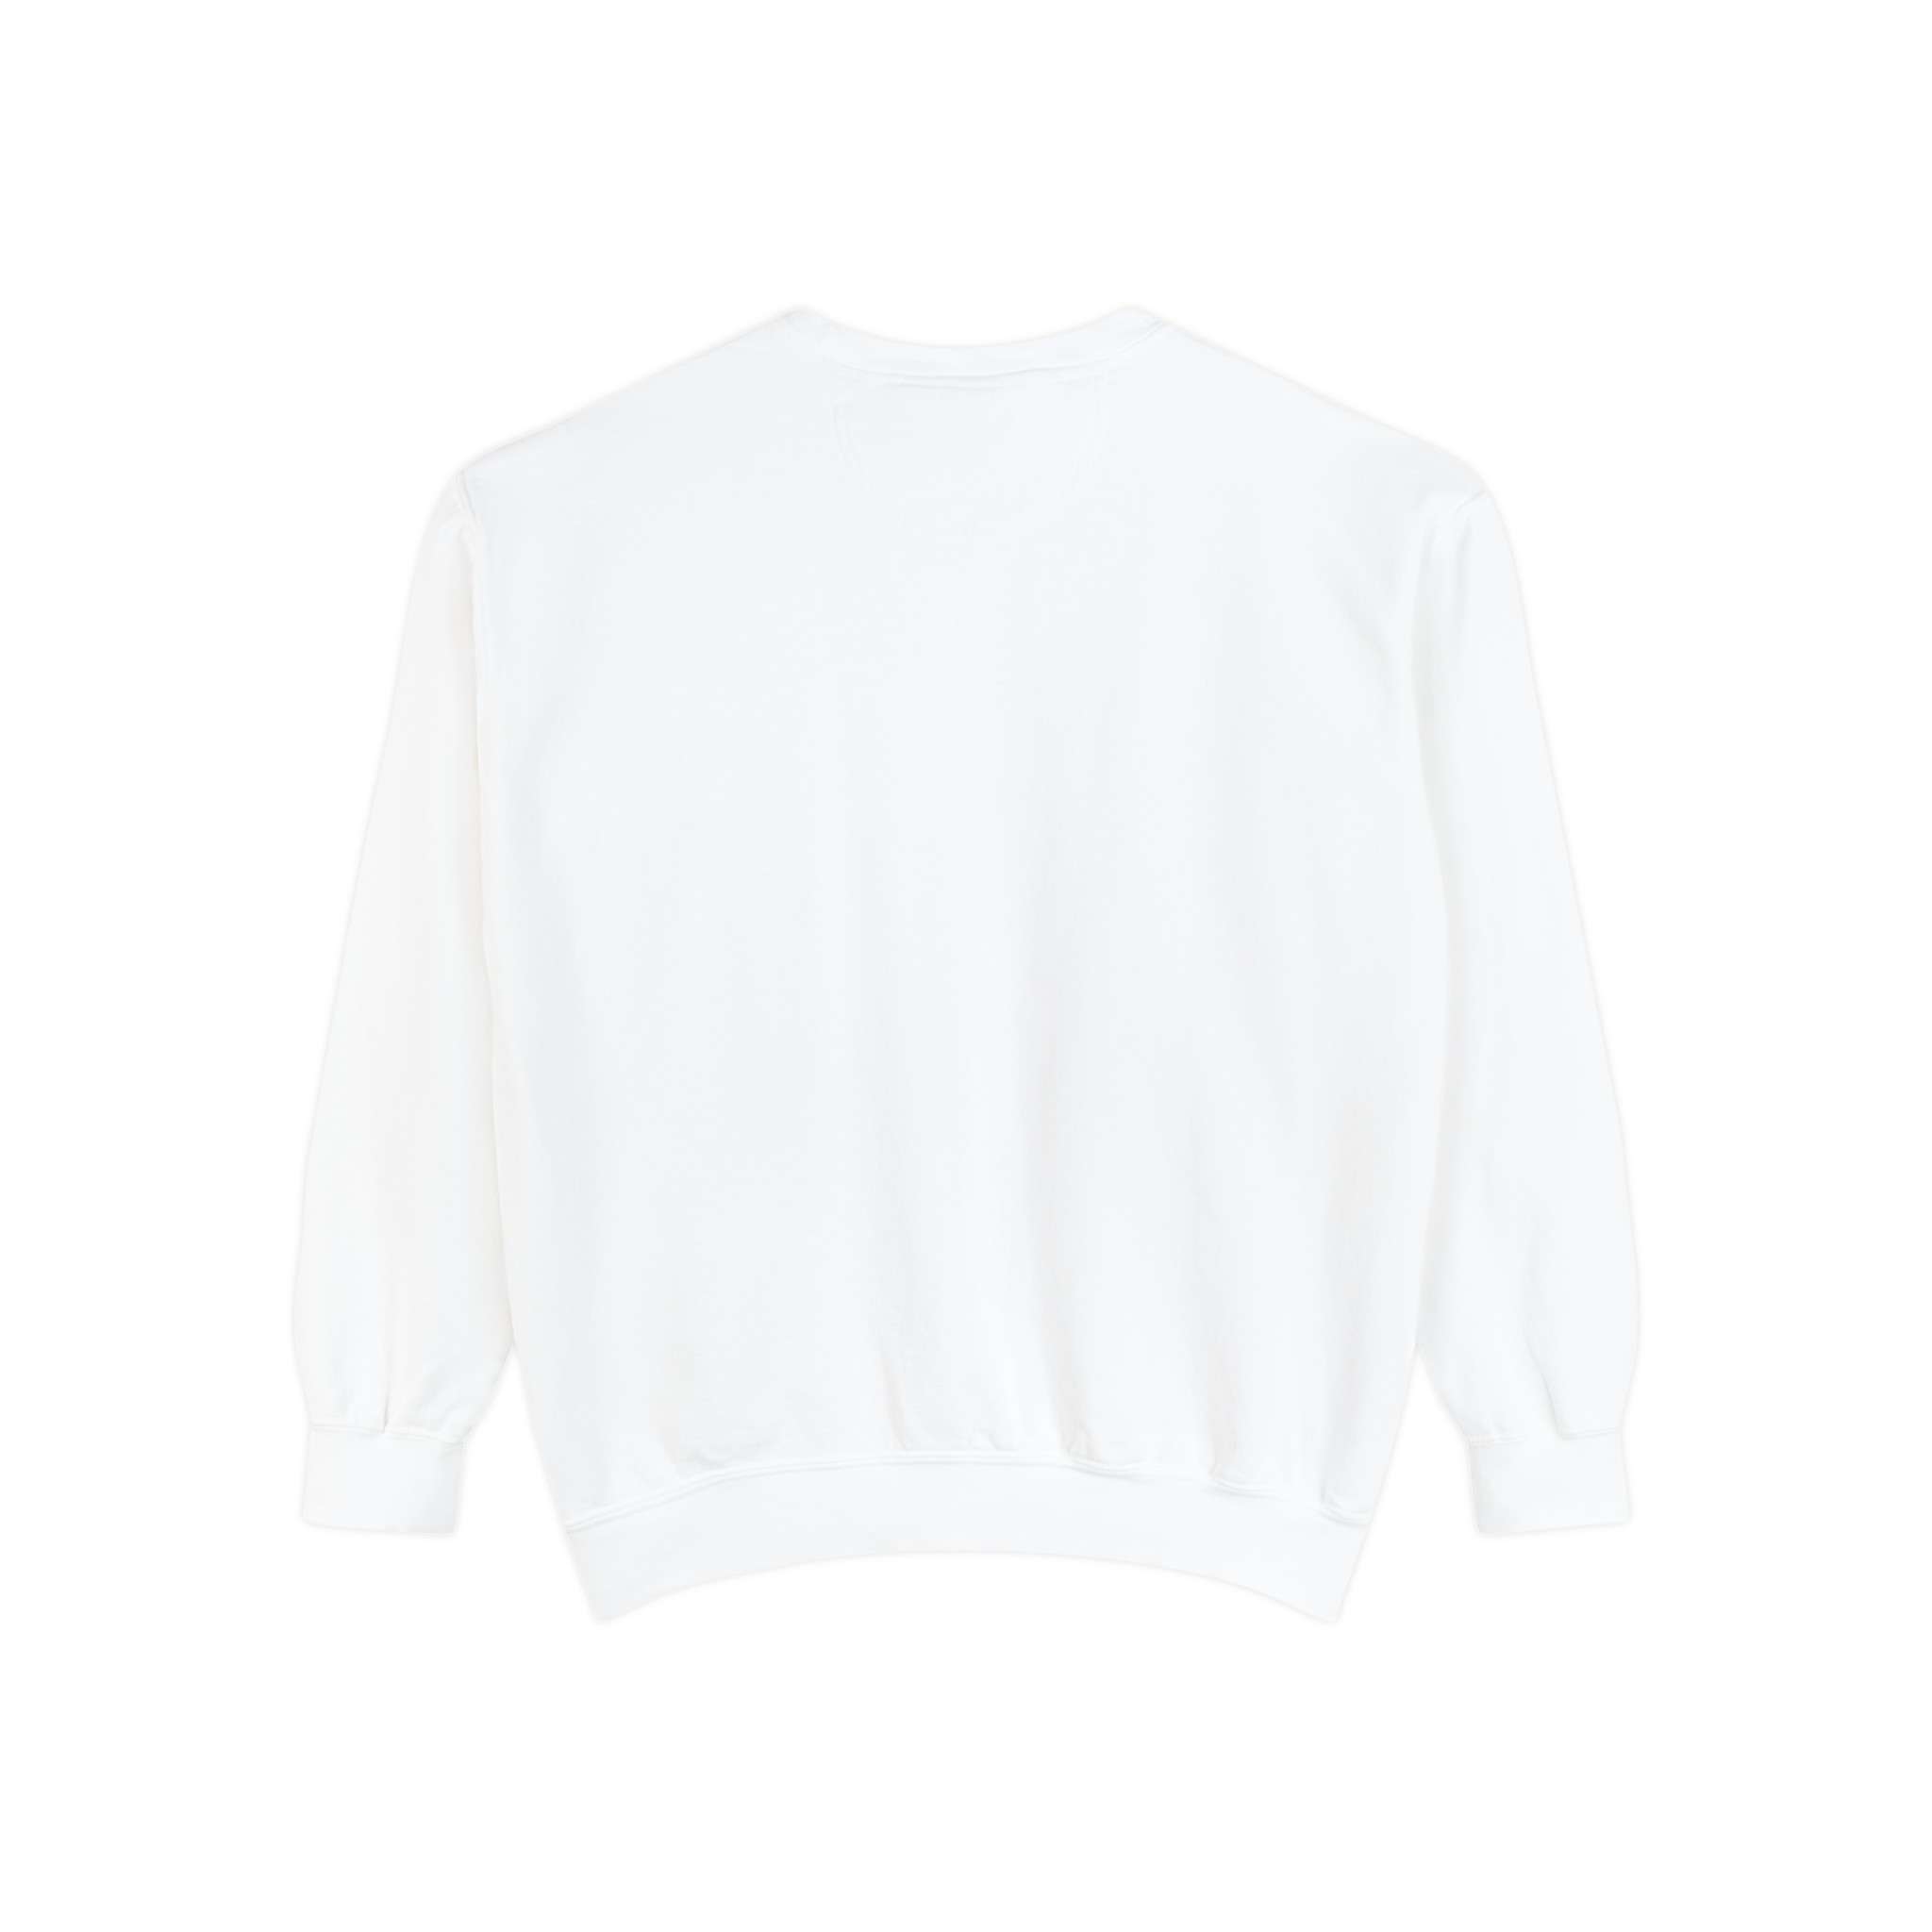 Sukuna Design Unisex Garment-Dyed Sweatshirt